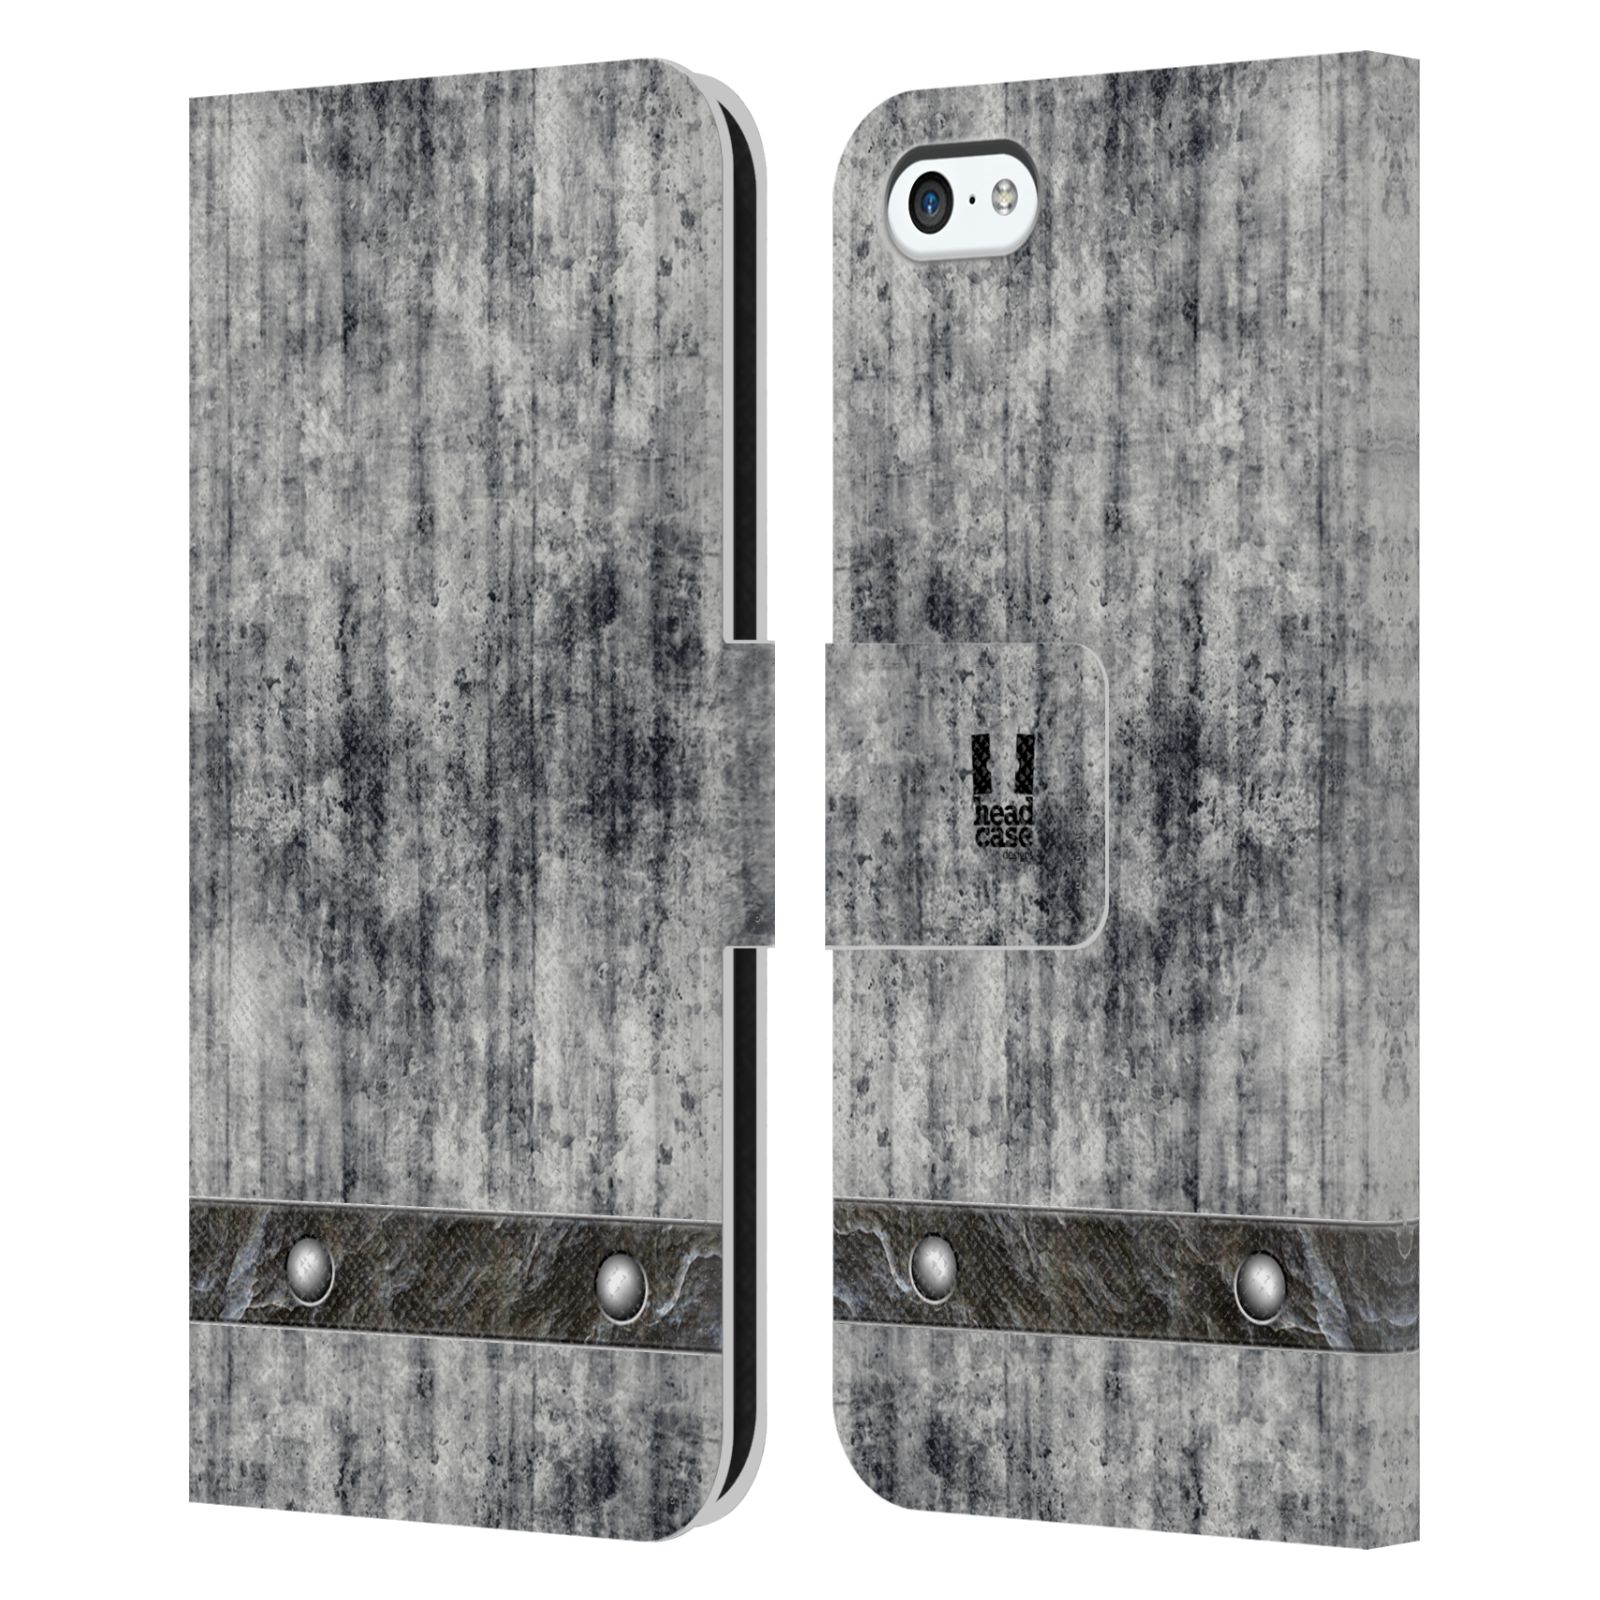 Pouzdro pro mobil Apple Iphone 5C - Stavební textura šedý beton